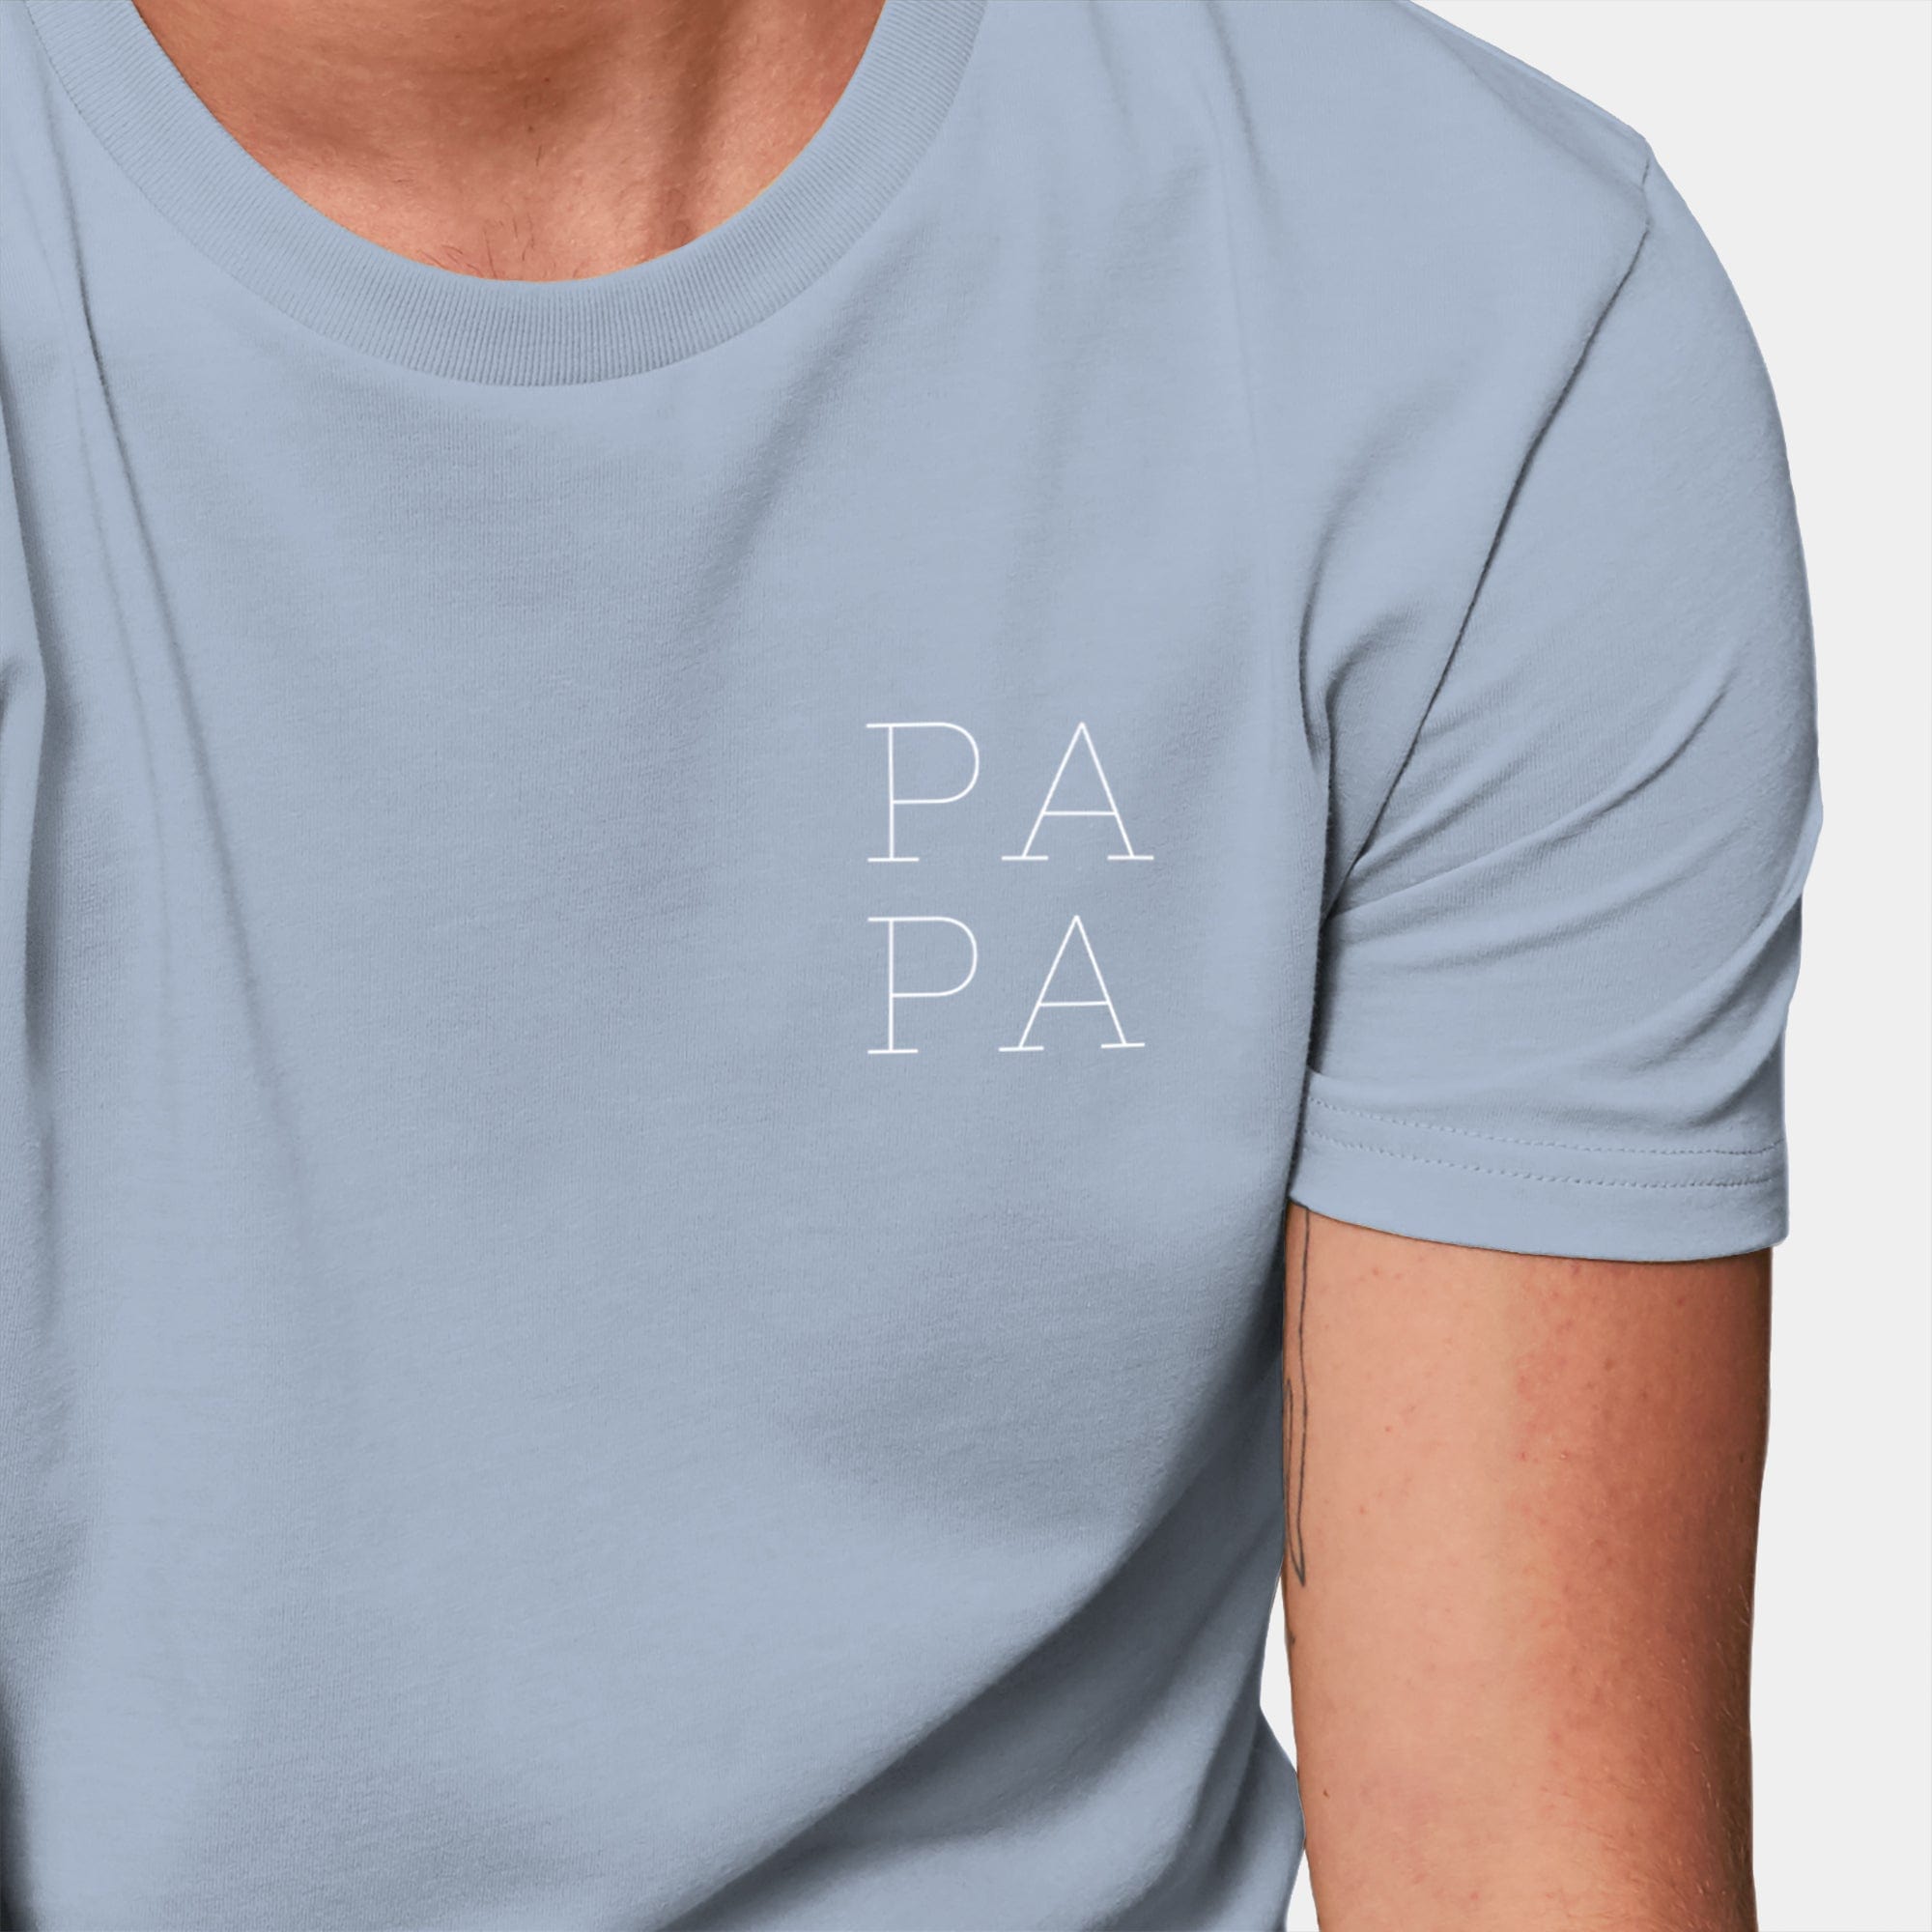 HEITER & LÄSSIG T-Shirt "Papa" - aus nachhaltiger und fairer Produktion